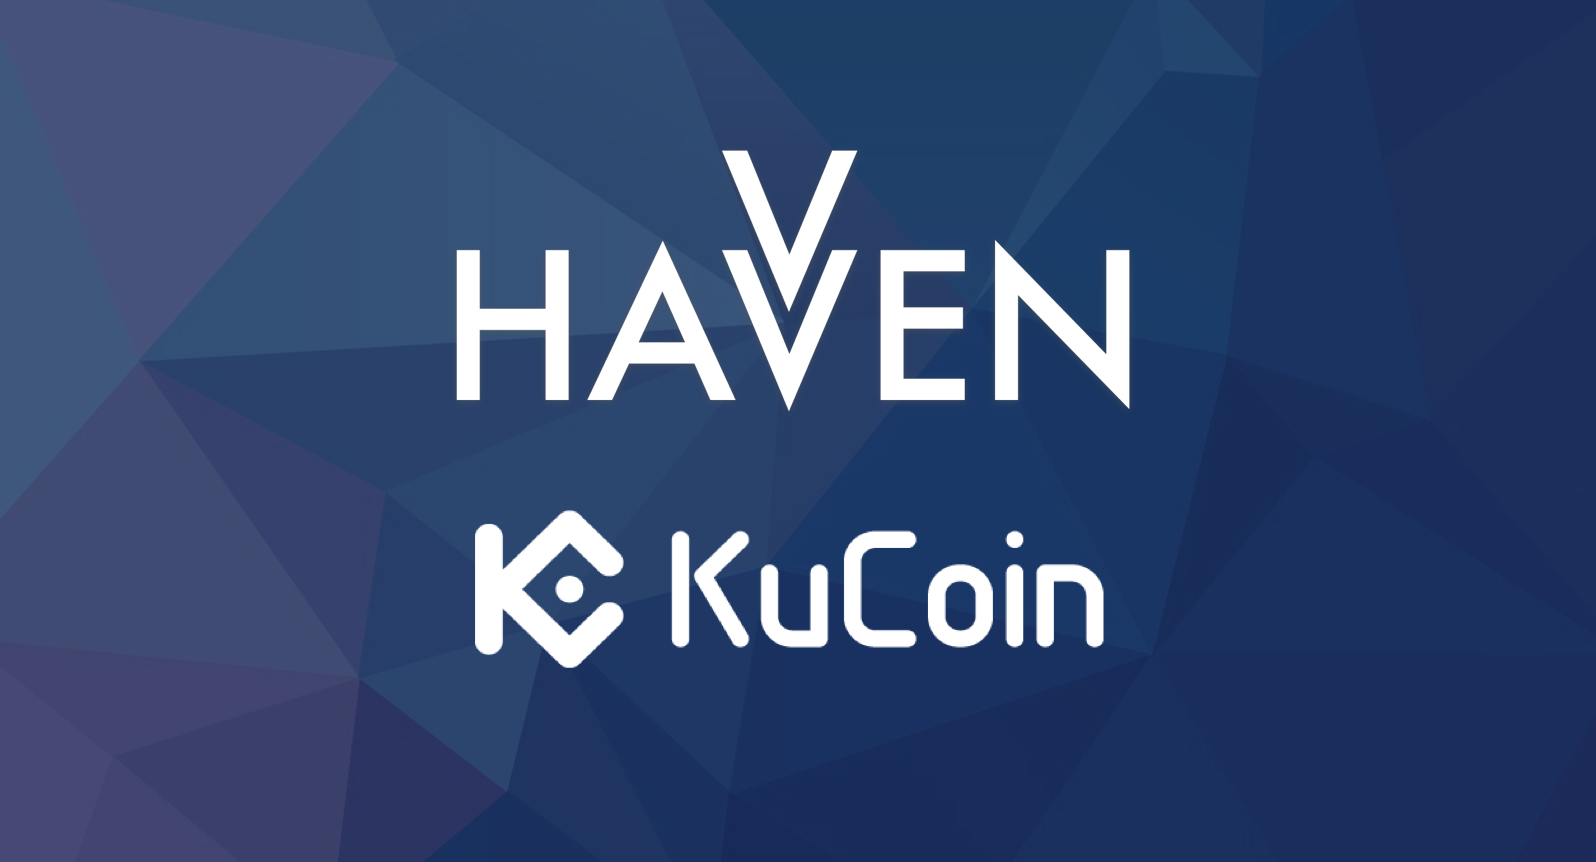 Announcing KuCoin